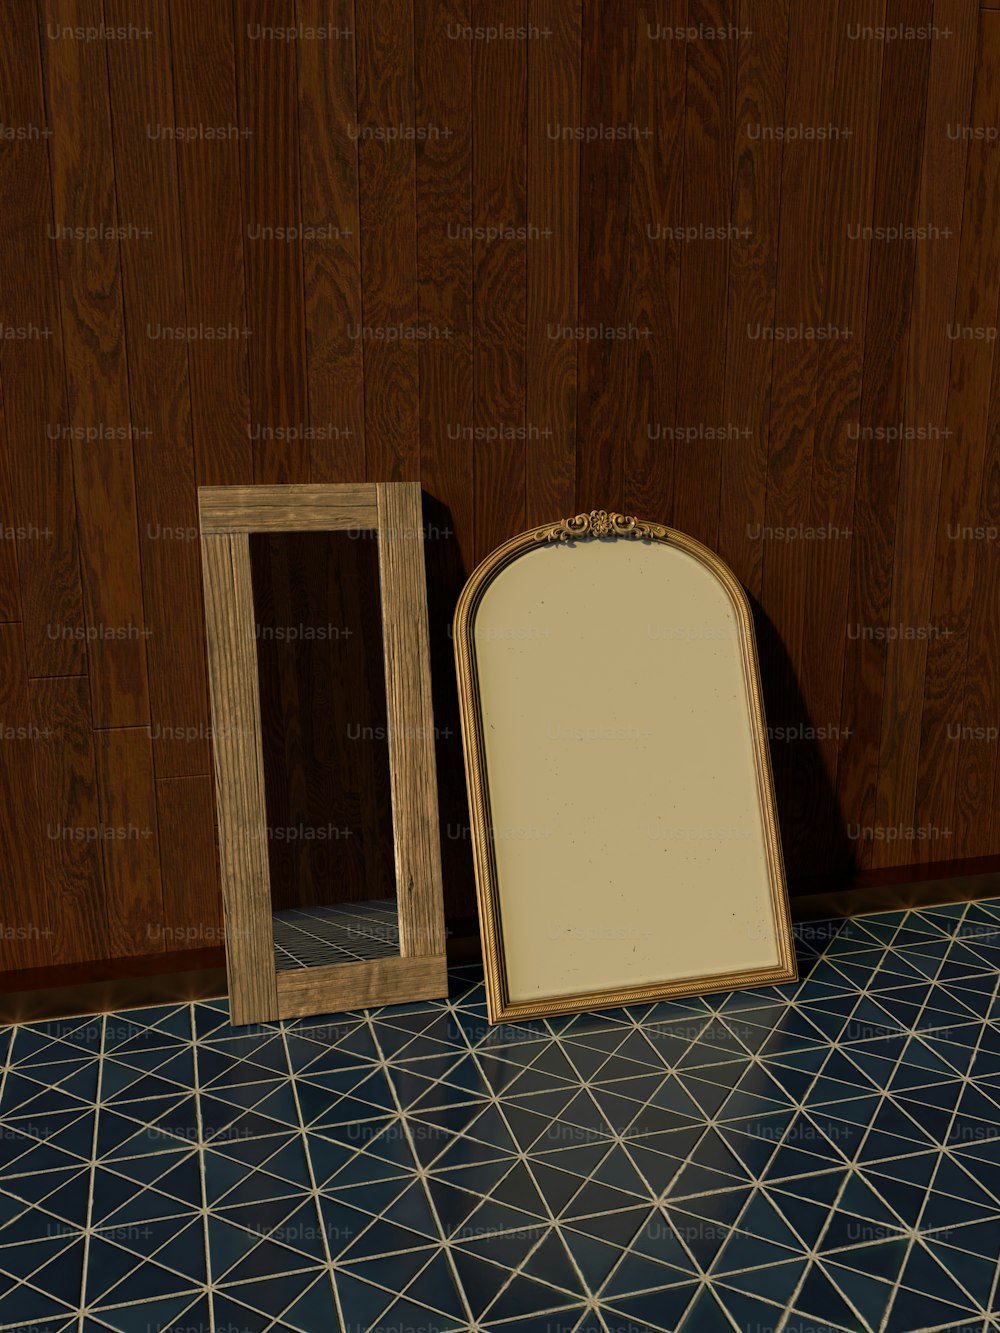 Ein Spiegel sitzt auf einem Fliesenboden neben einem Holzrahmen